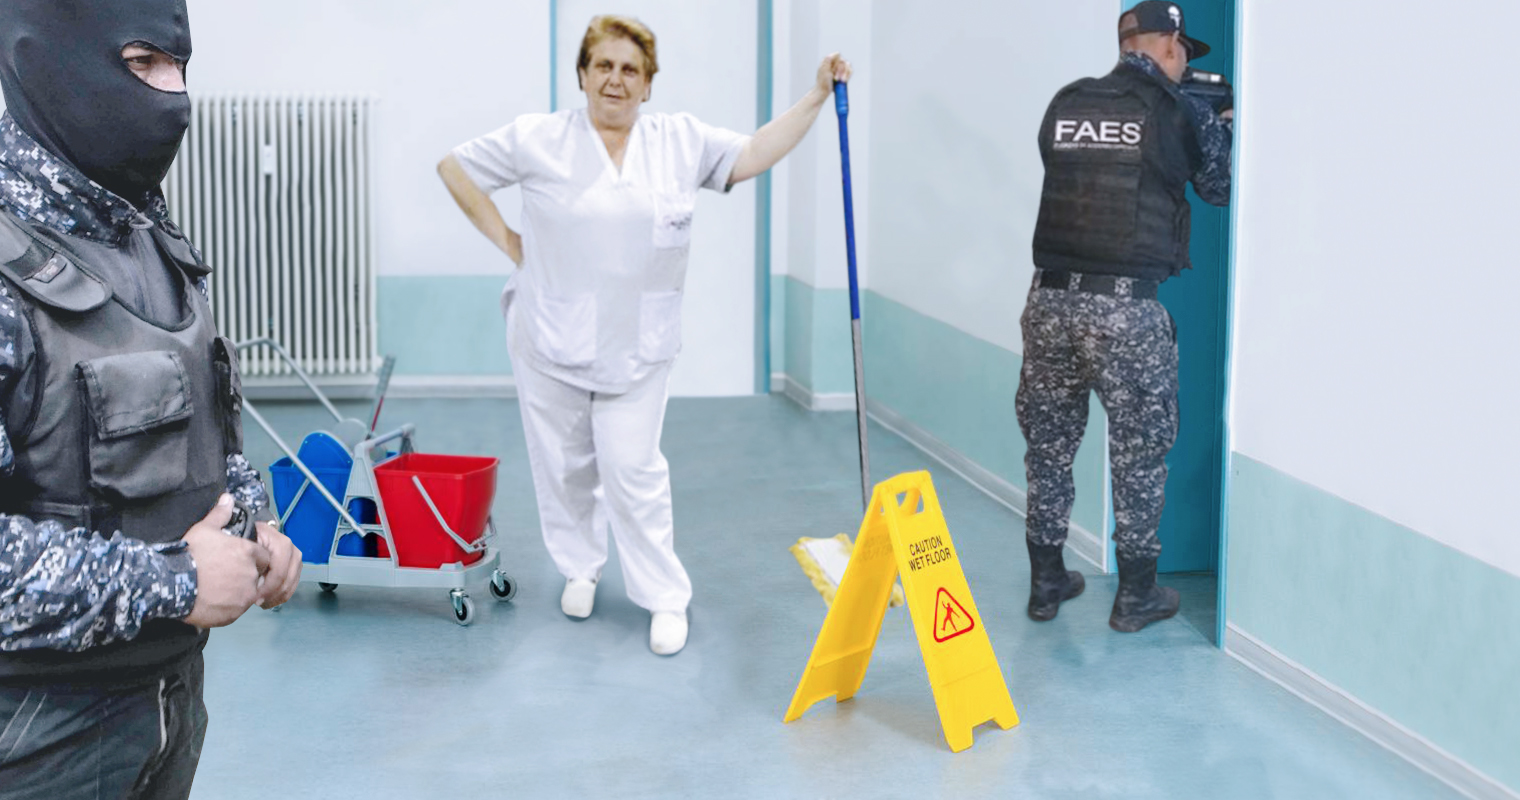 Señora de limpieza pone alcabala del FAES para que no pasen por el piso mojado